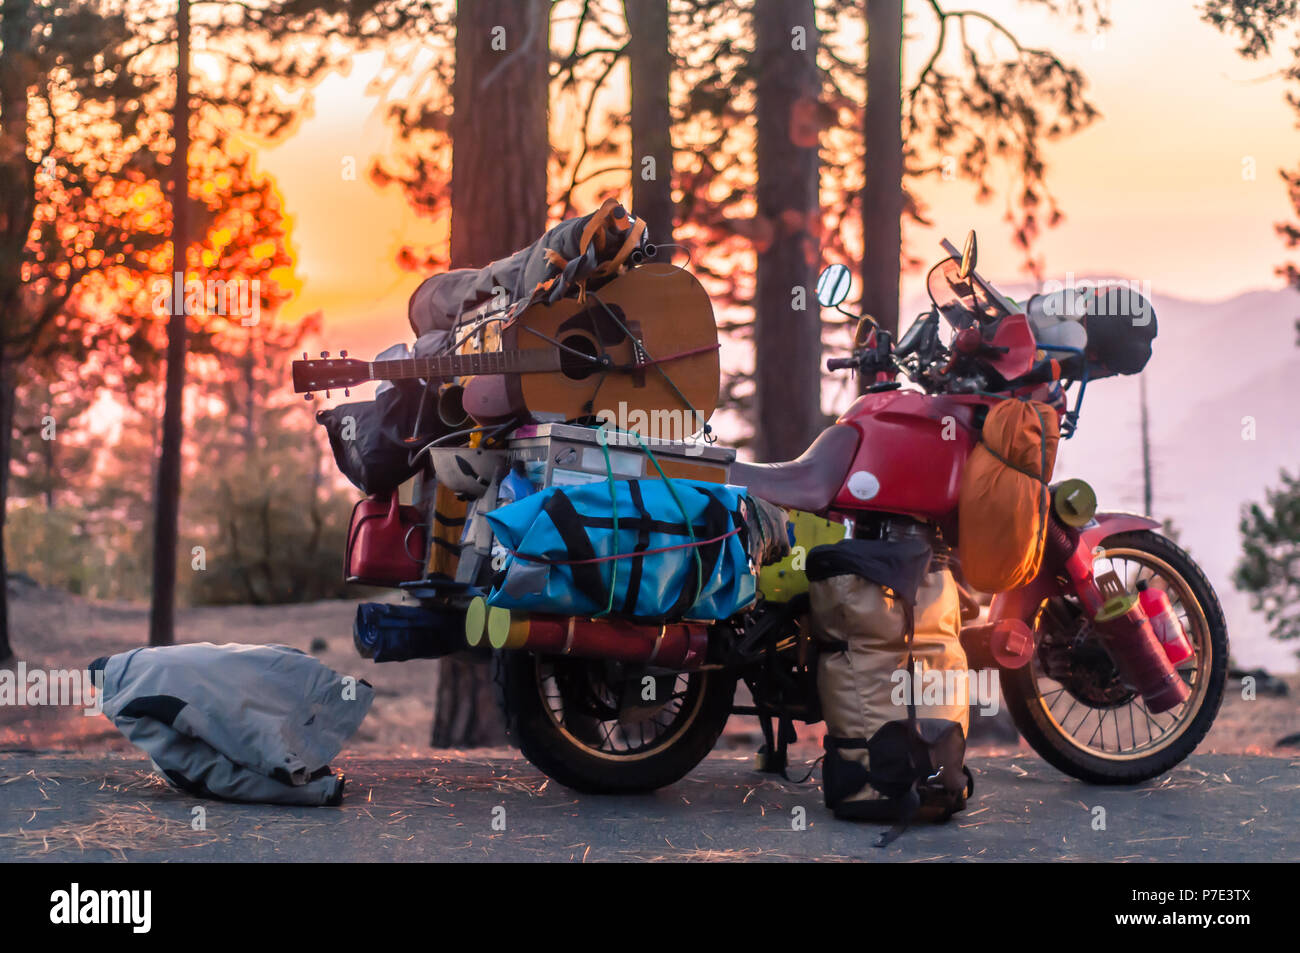 Teil entladen touring Motorrad im Wald bei Sonnenuntergang am Straßenrand geparkt, Yosemite National Park, Kalifornien, USA Stockfoto